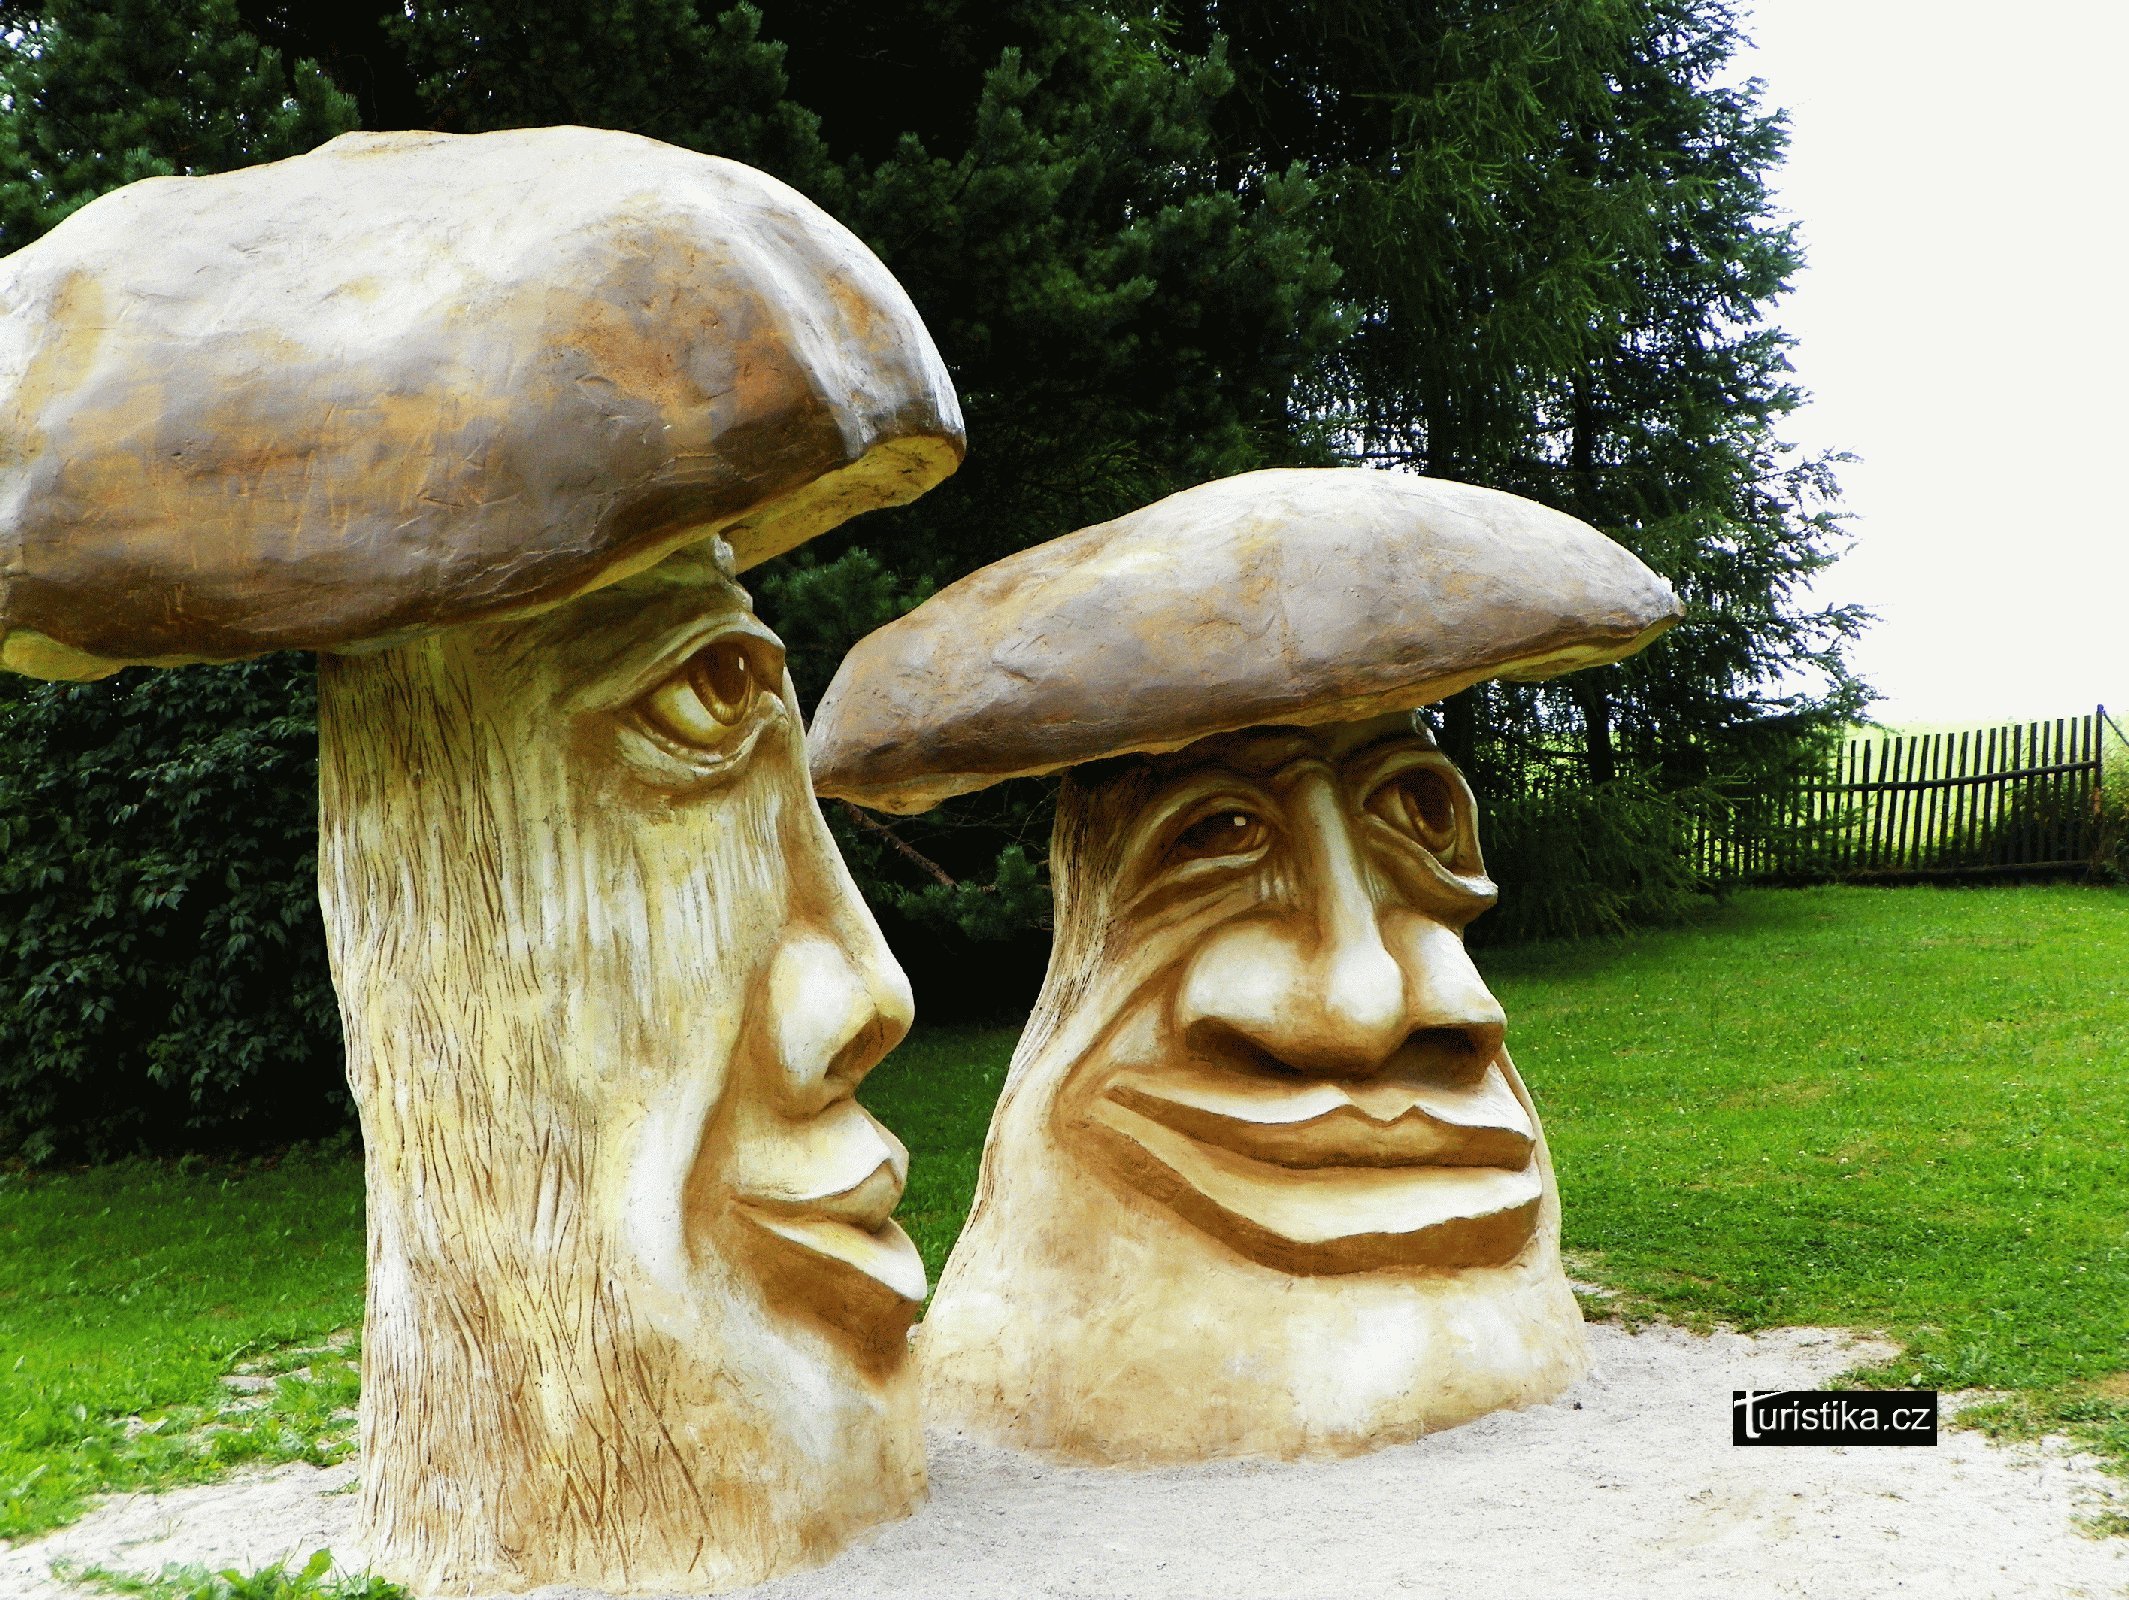 Michal Olšiak – Mushrooms